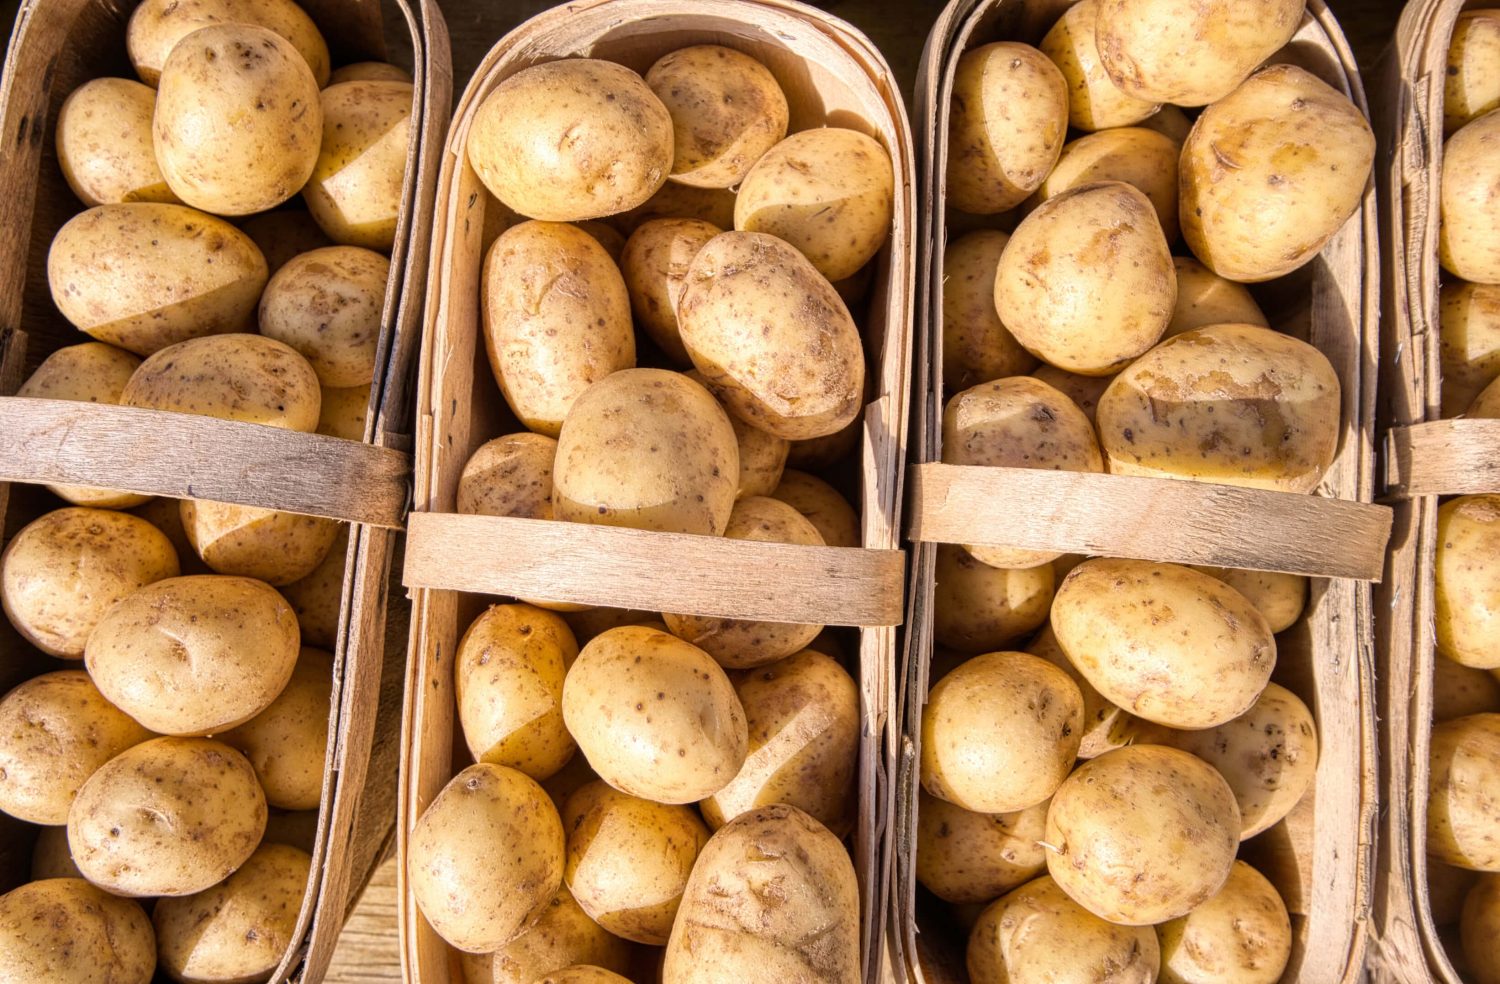 Viele Kartoffeln in vier Körben nebeneinander.